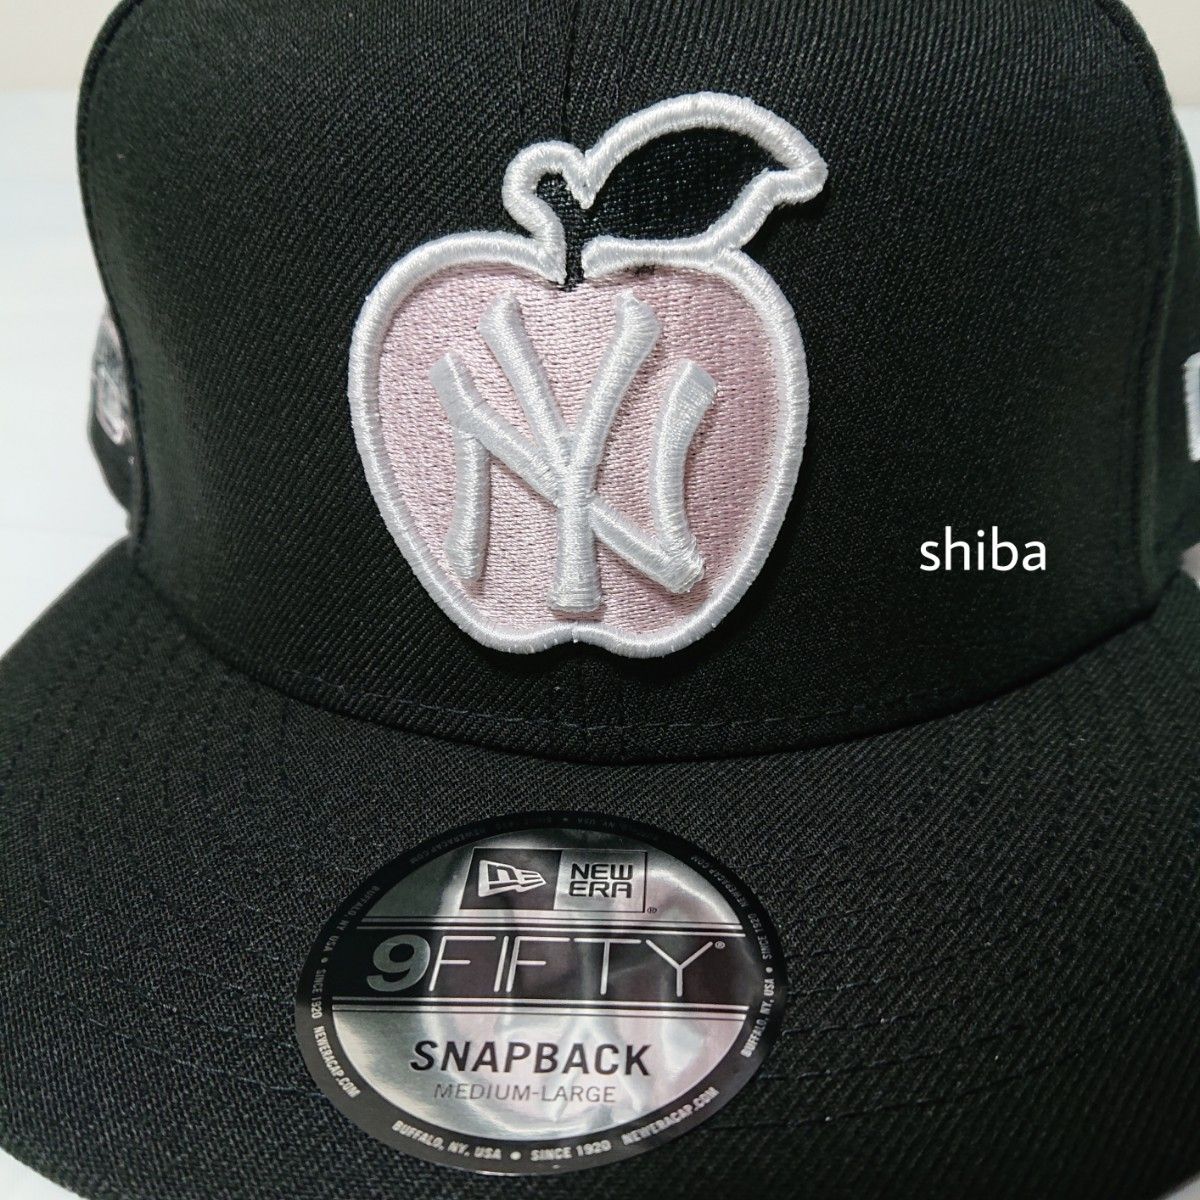 NEW ERA ニューエラ 正規品 アップル キャップ 帽子 9FIFTY 950 NY ヤンキース 黒 ブラック ピンク M/L